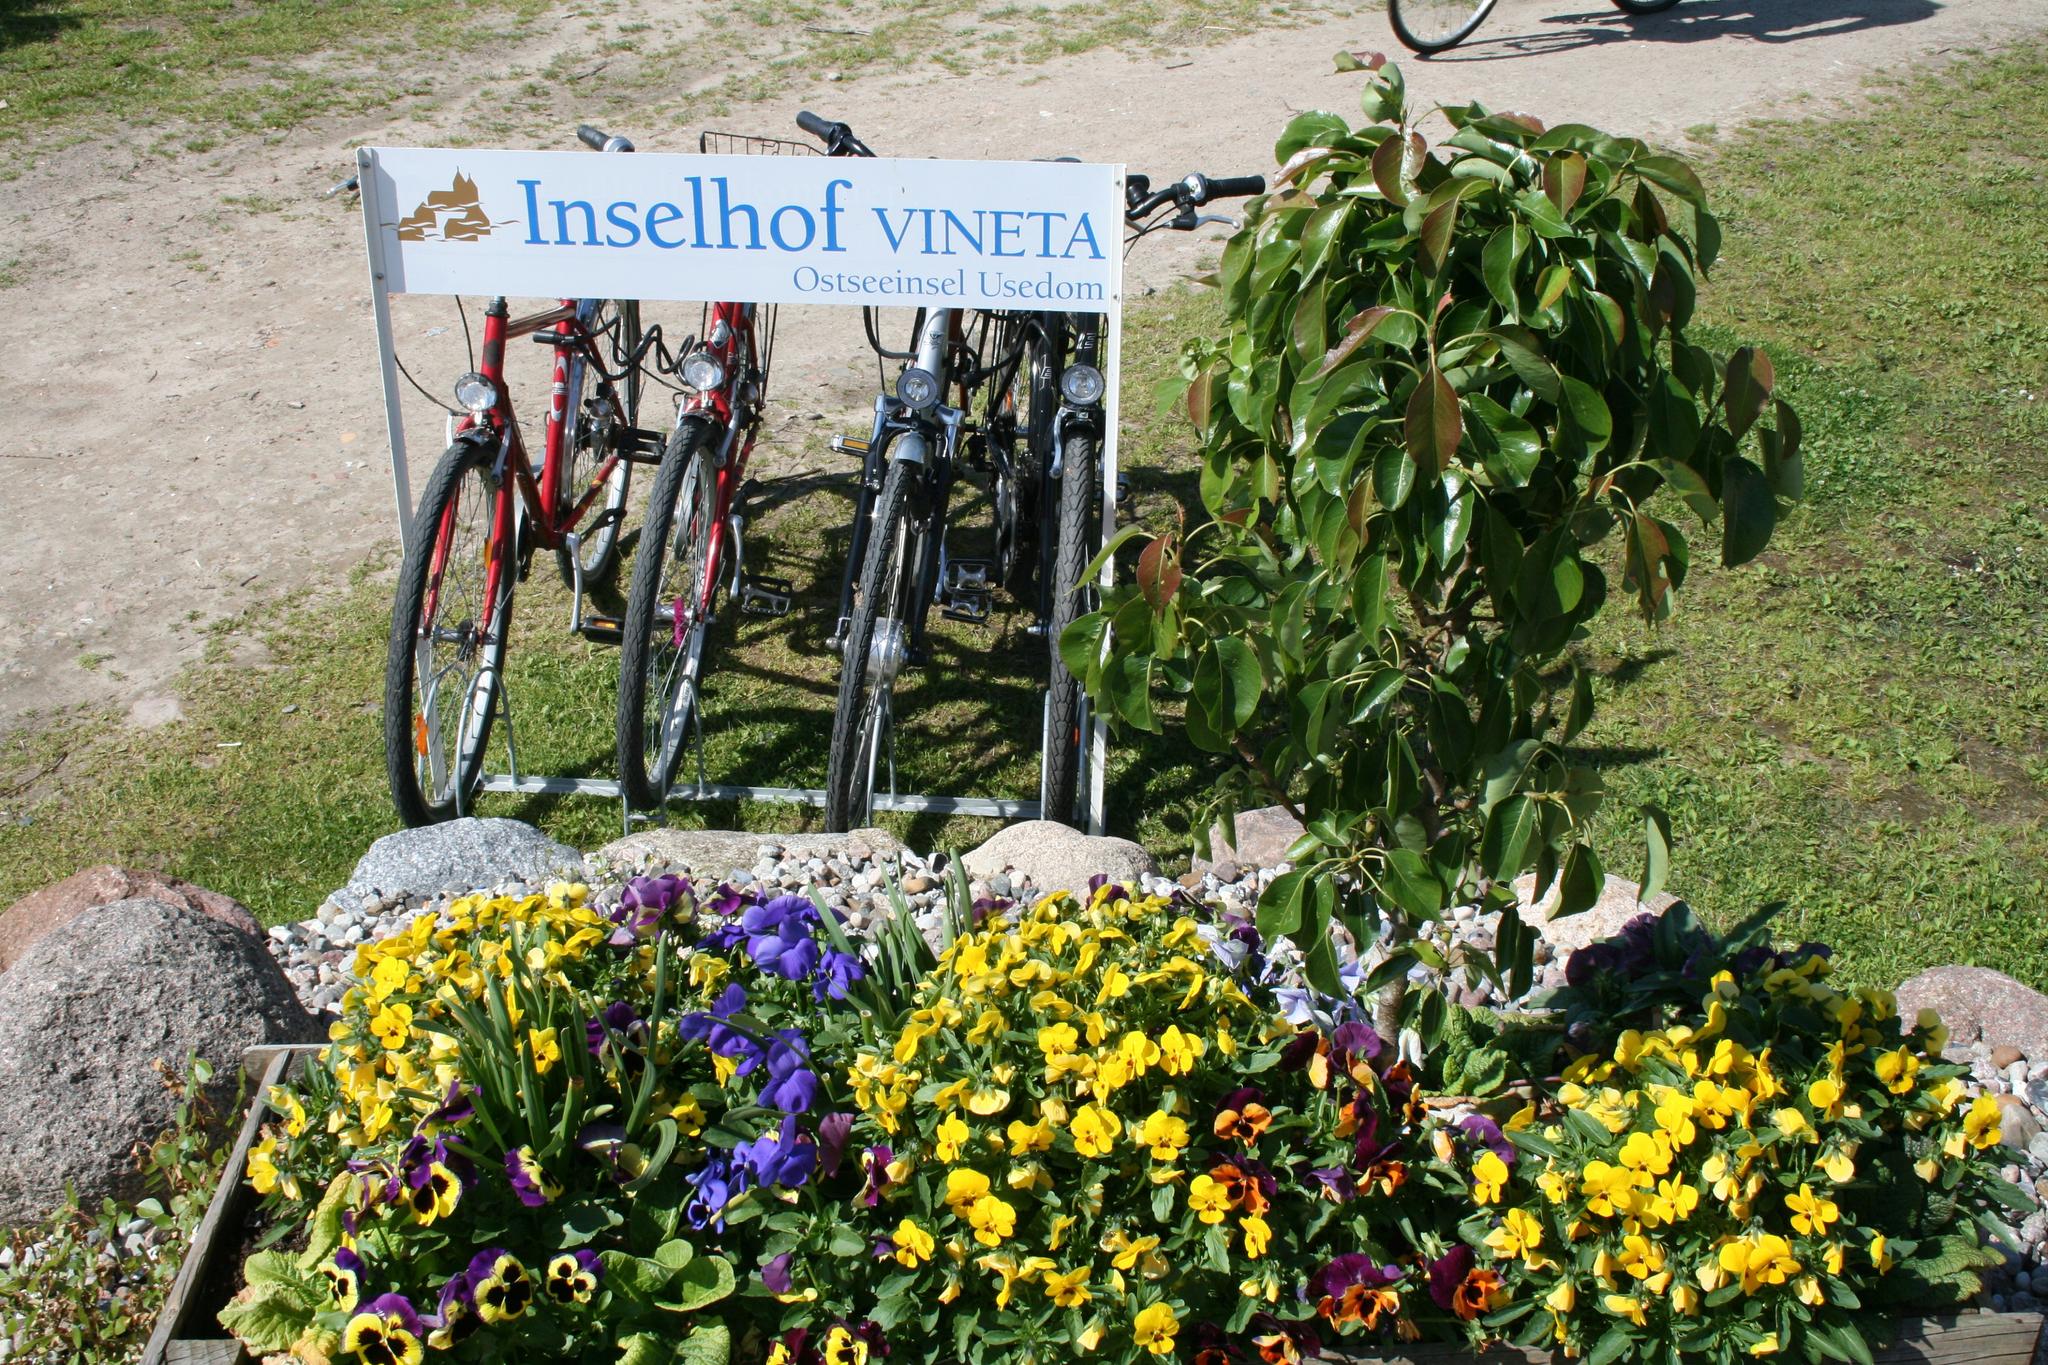 Fahrradständer am Inselhof VINETA